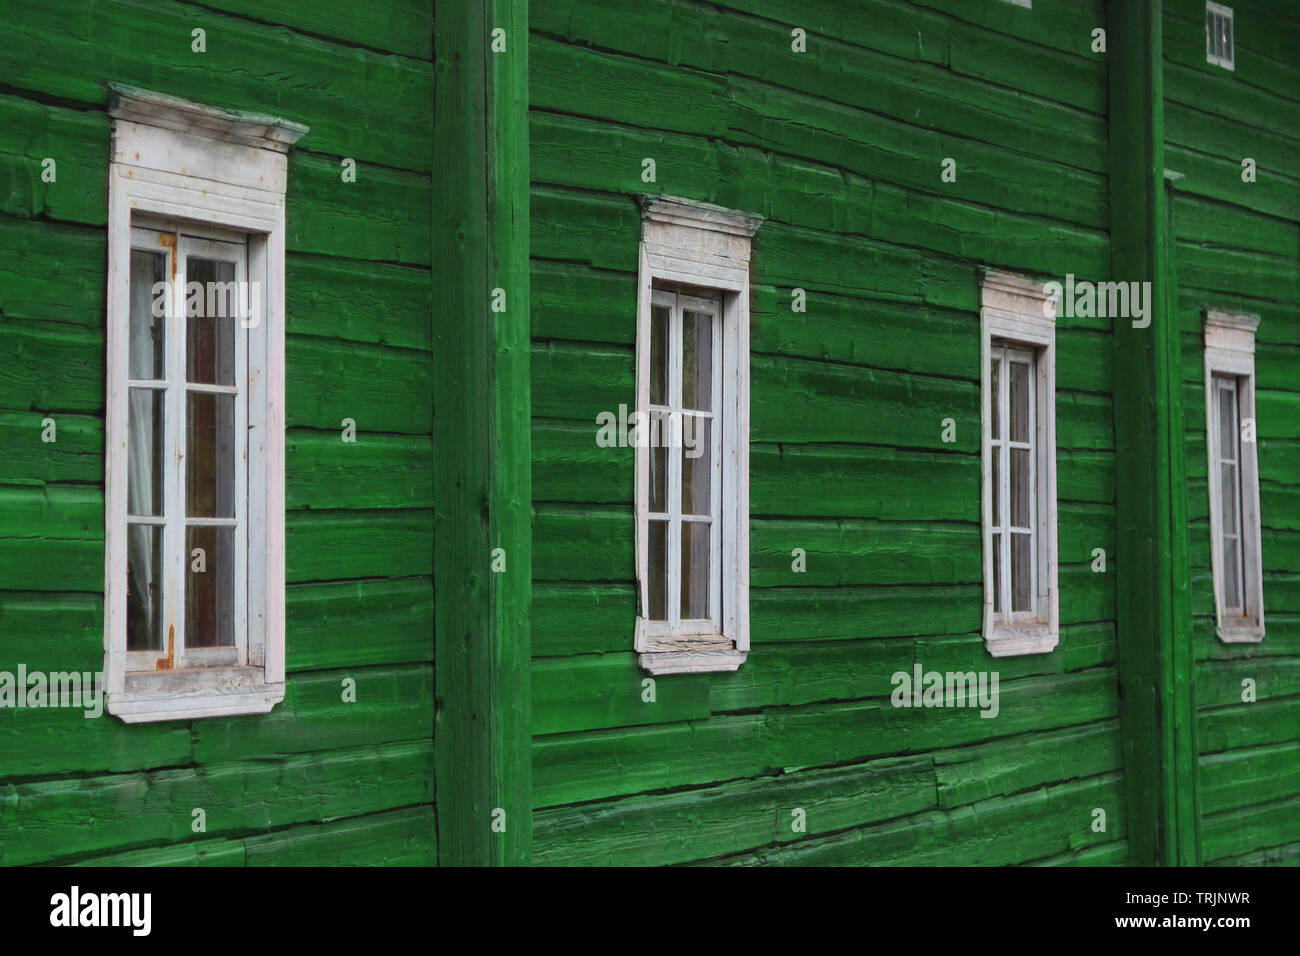 Reihe von Windows auf einem grün lackierten Holz- wand Stockfoto